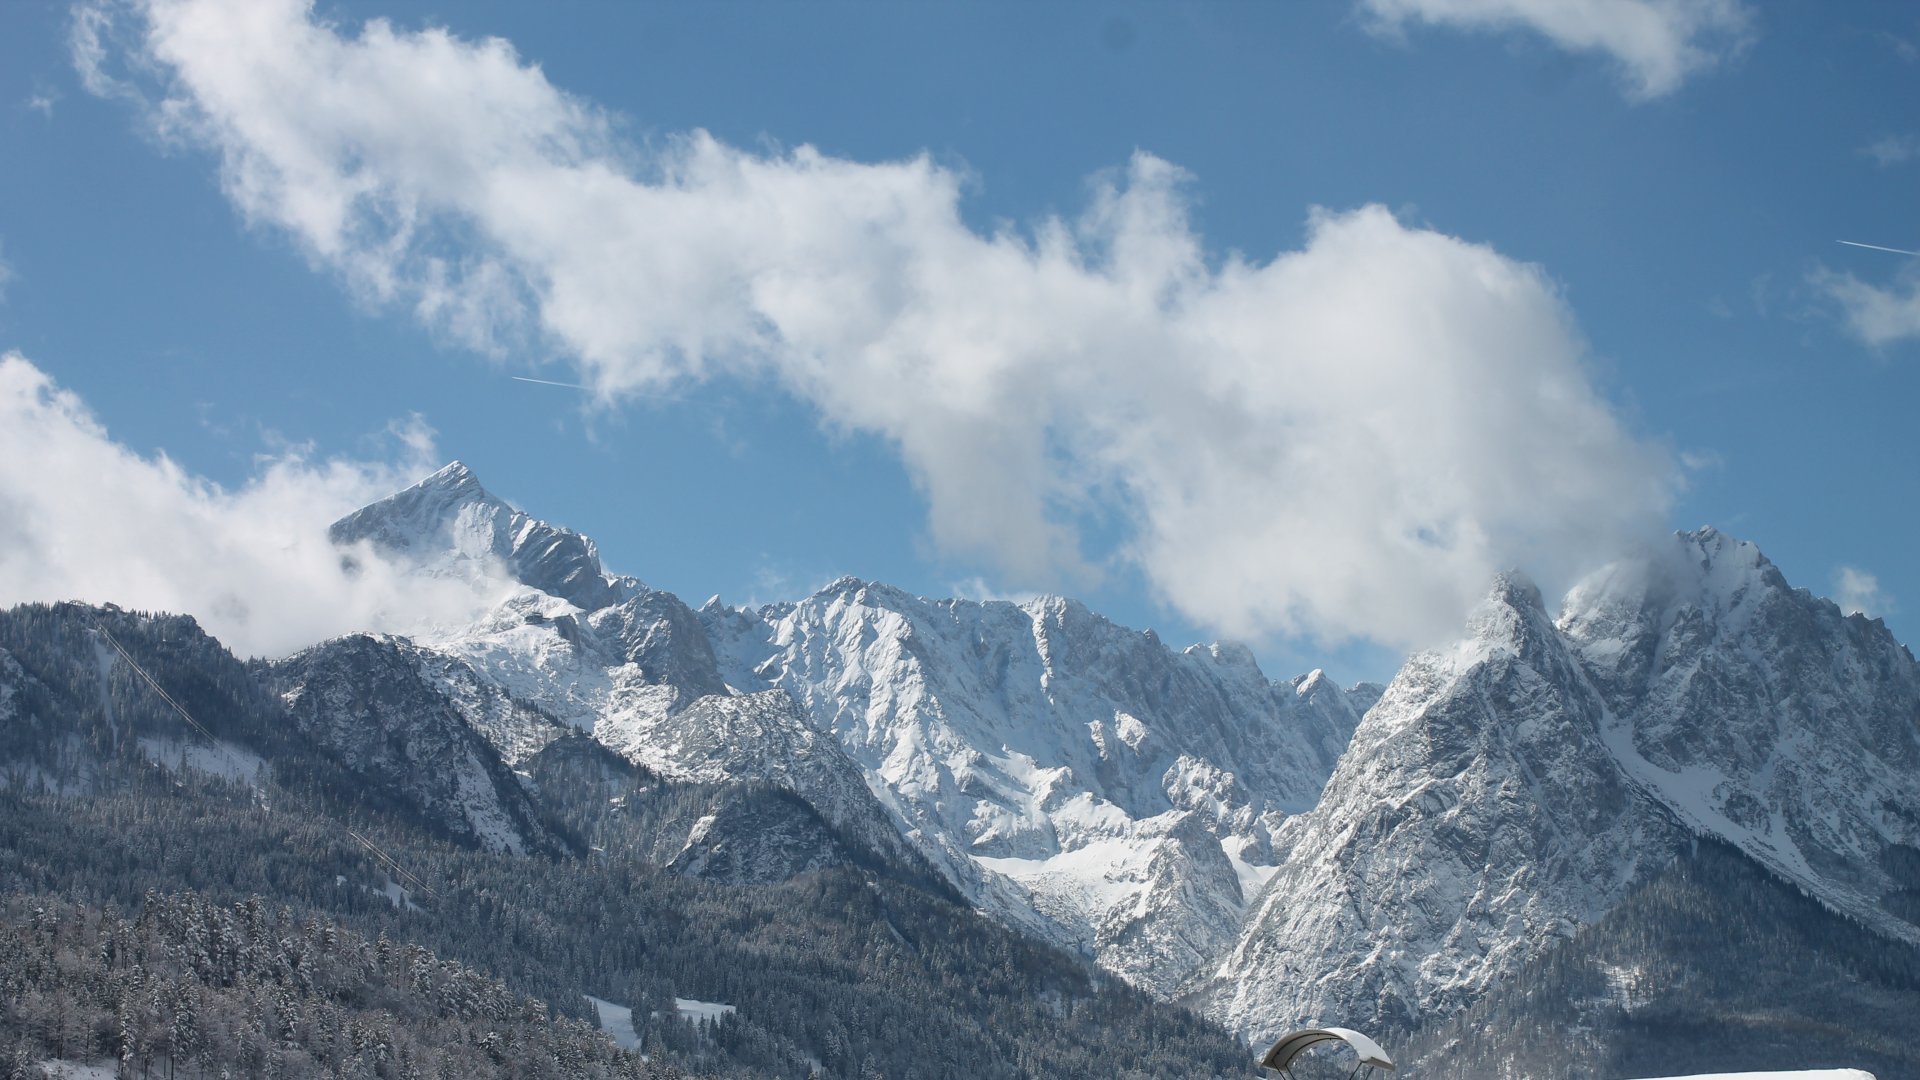 Garmisch/Kandaharlodge-Blick zur Alpspitze und Jubiläumsgrat